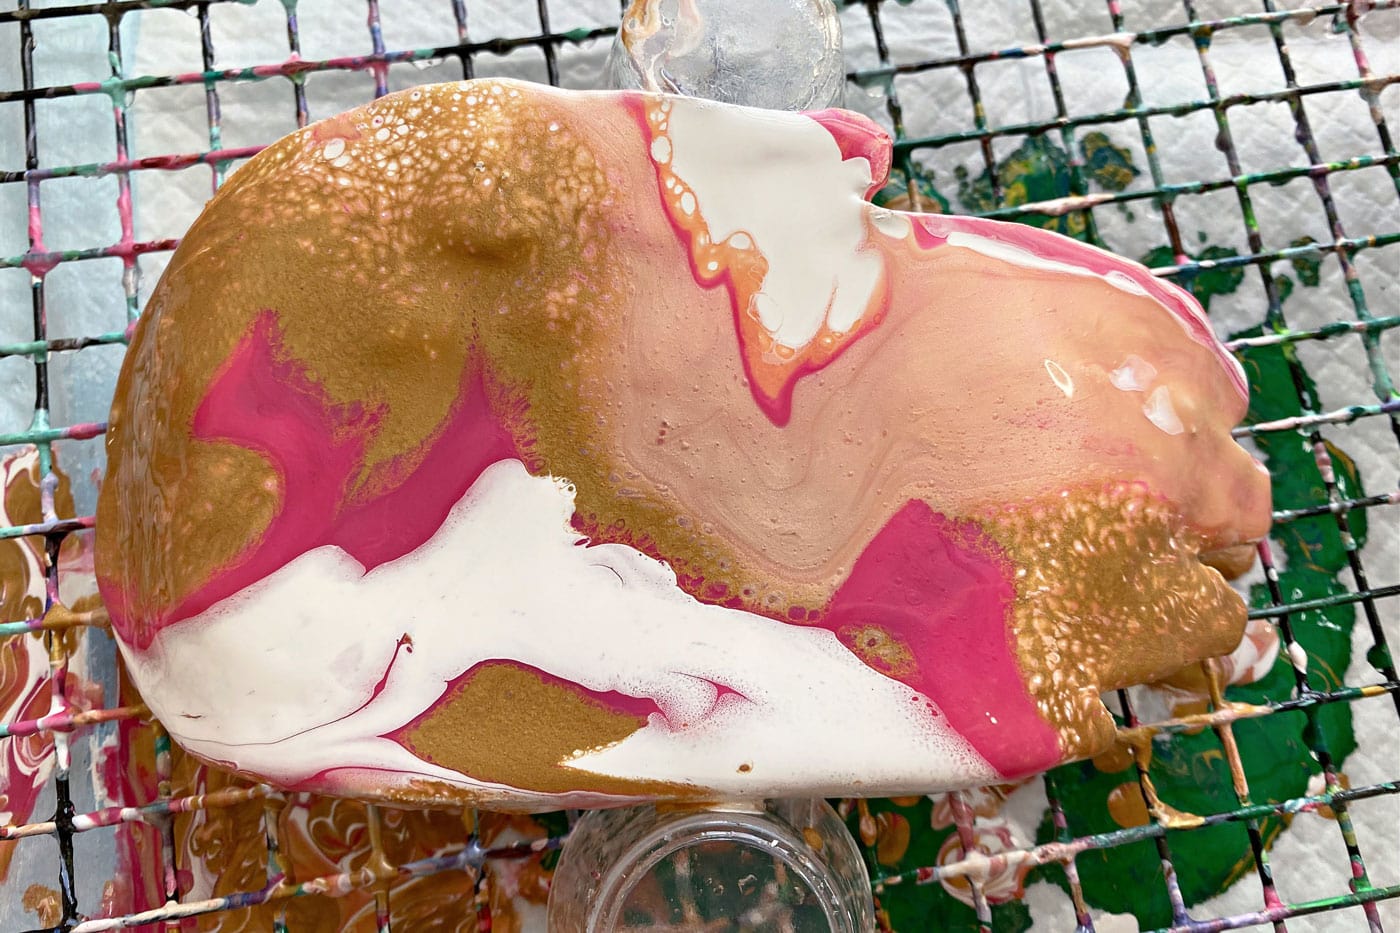 peinture rose, blanche et dorée versée sur le plat